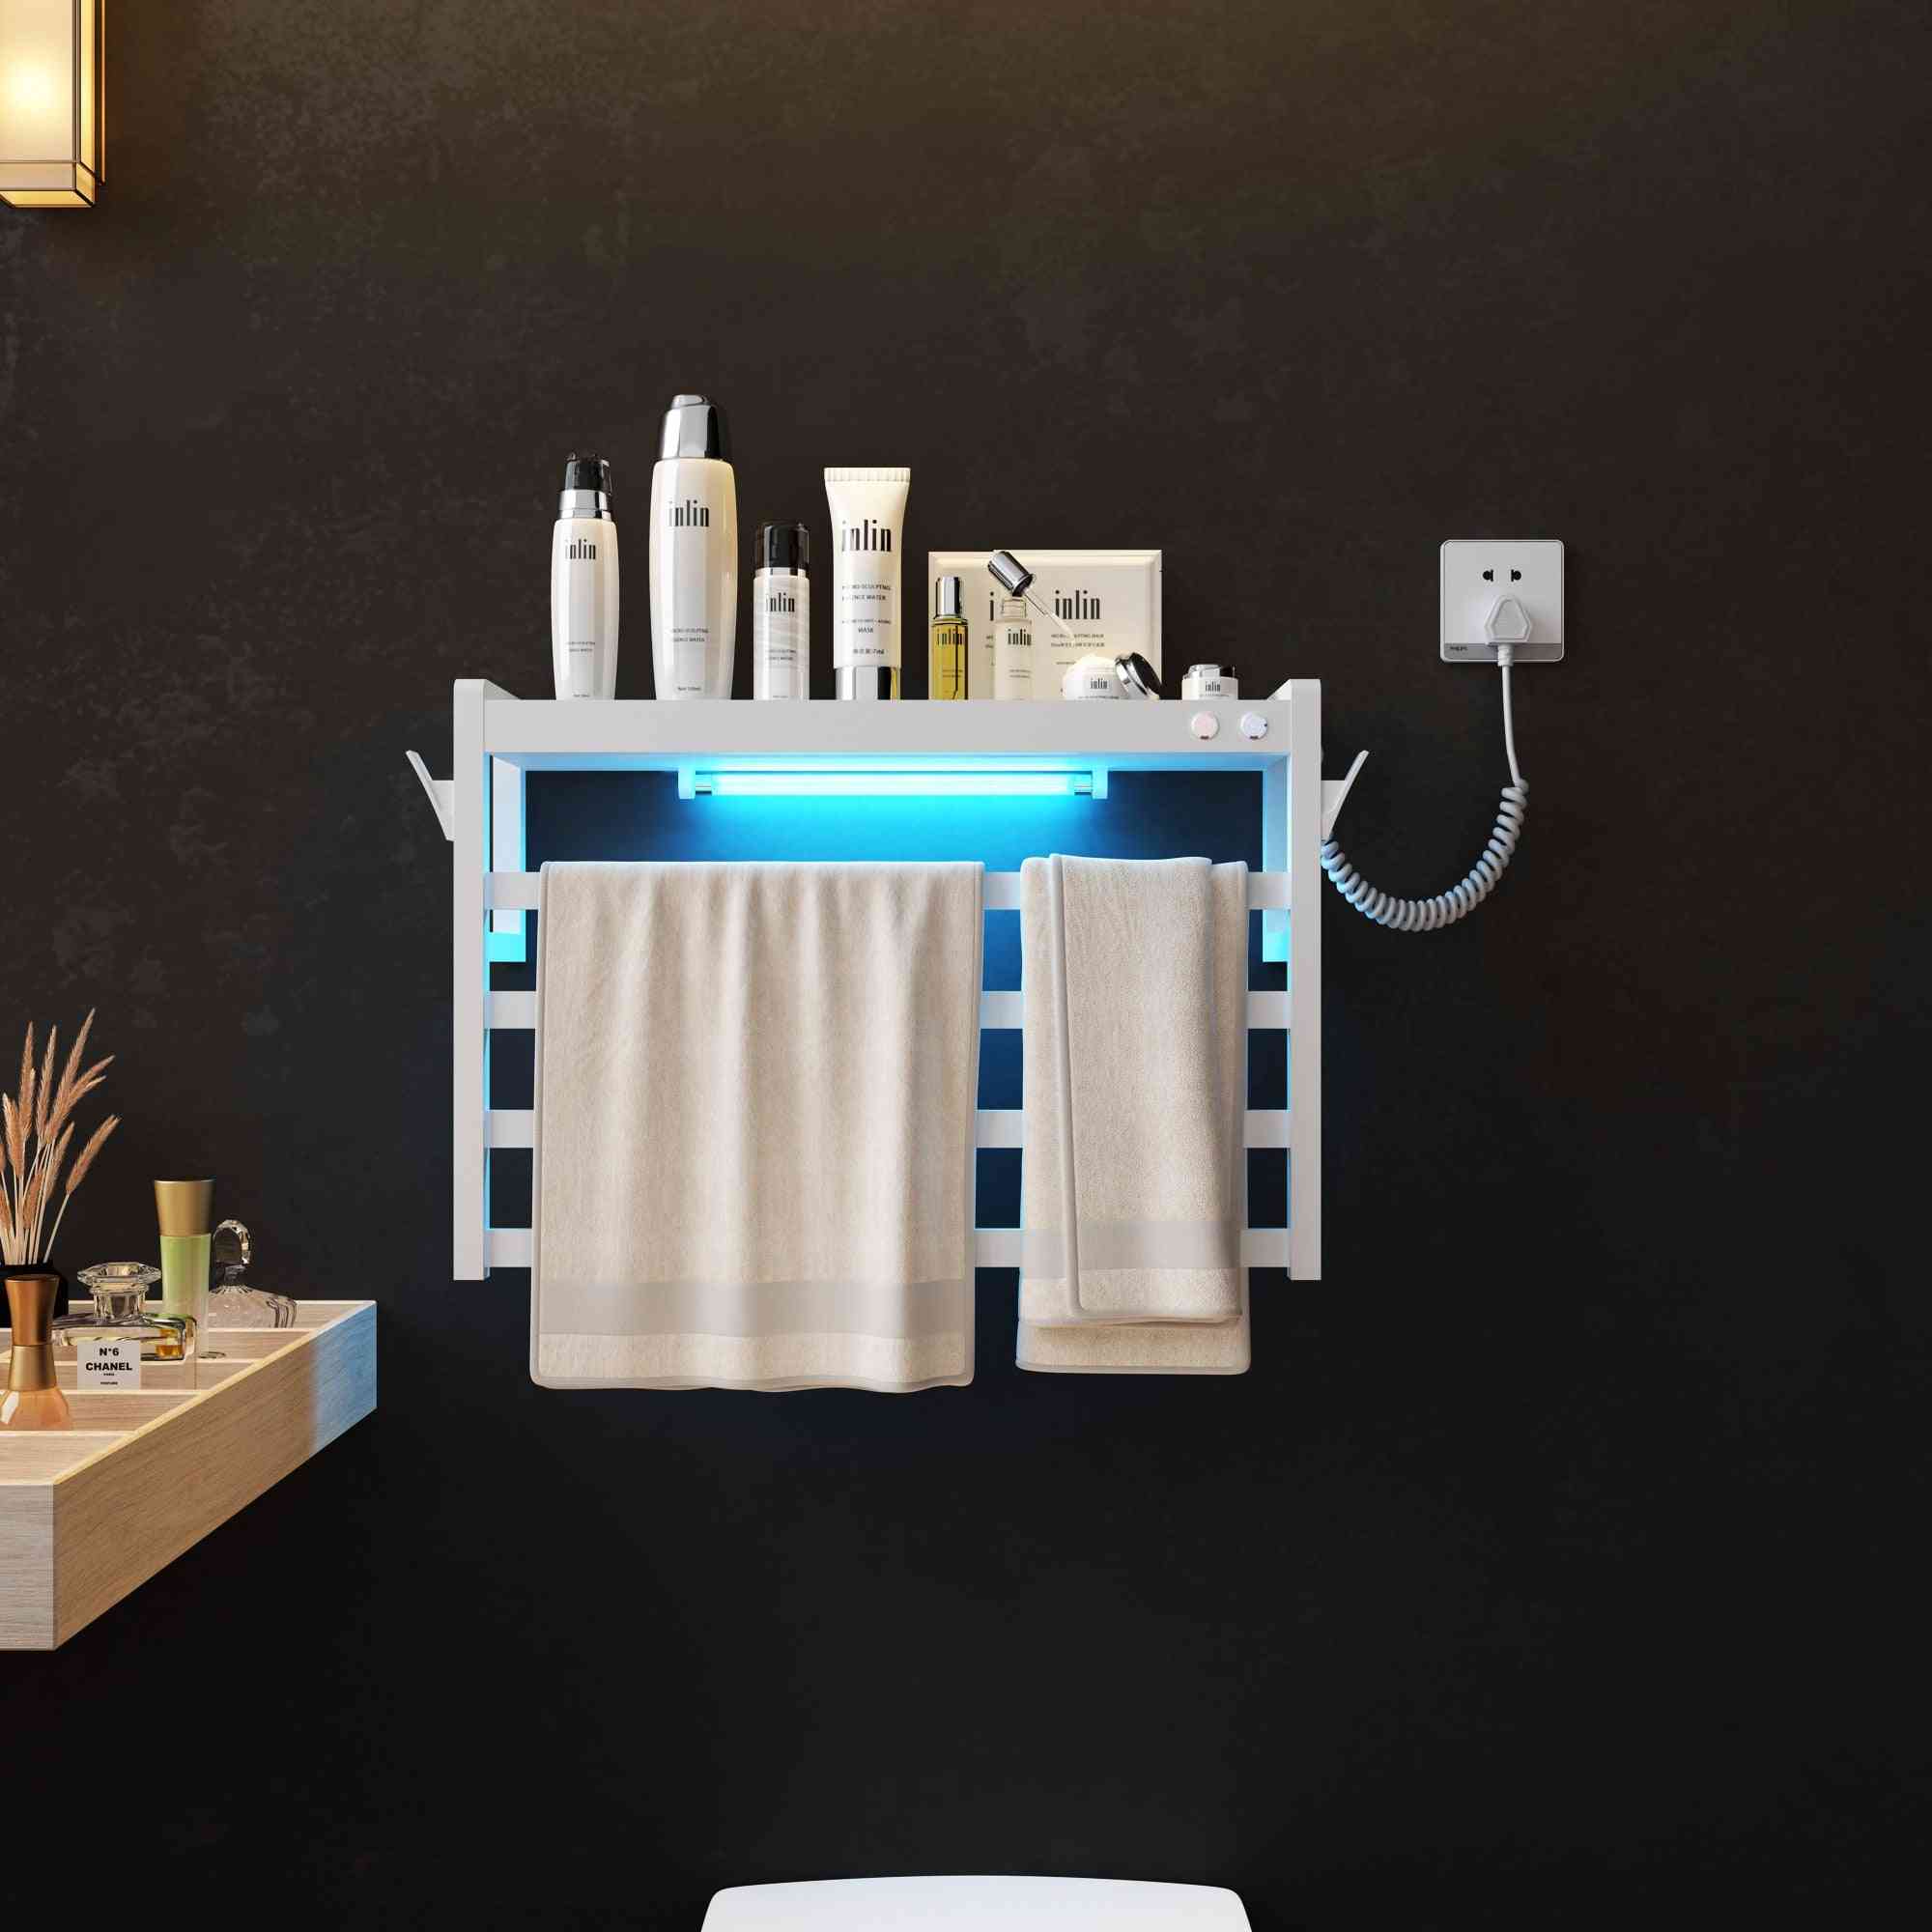 Acessórios de banheiro toalheiro aquecido eletricamente, secador de toalhas, toalheiro de aço inoxidável - atualização 101 do toalheiro inteligente de esterilização - branco básico / cn / direito